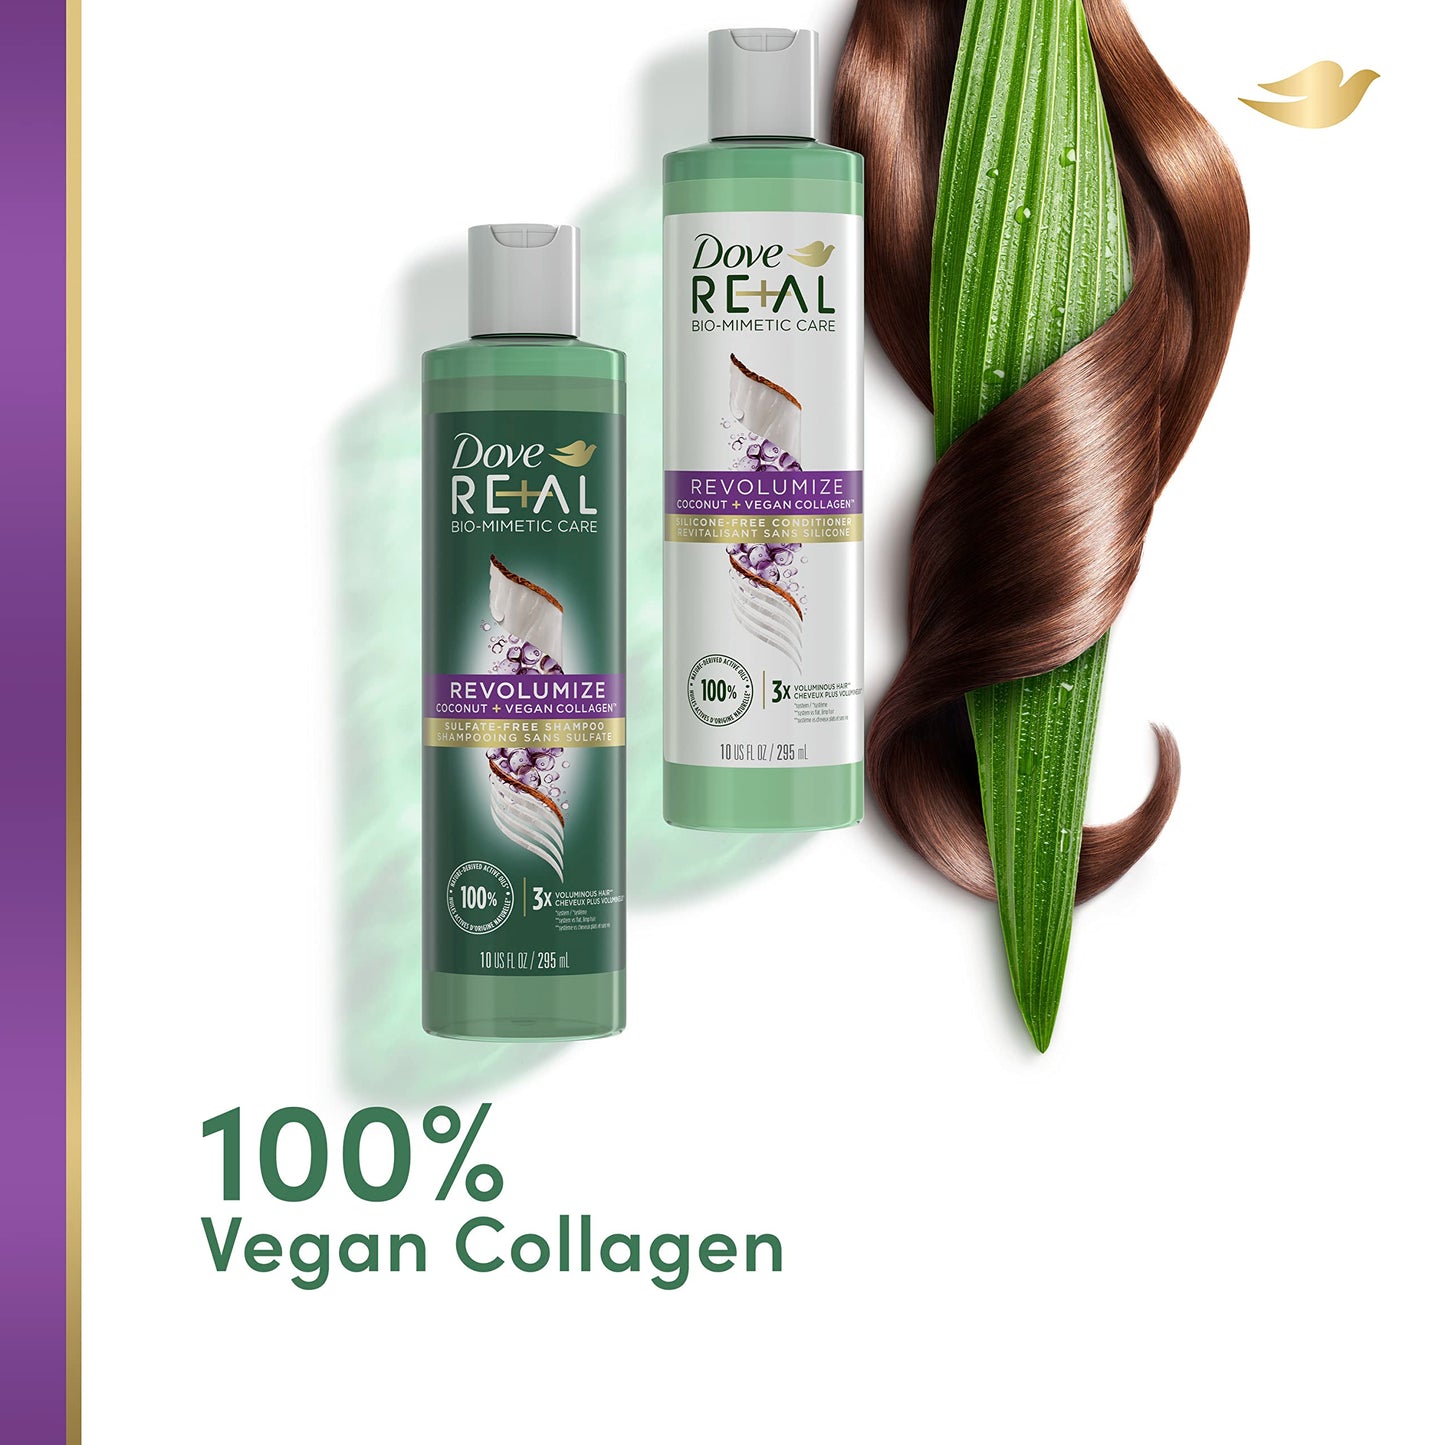 Dove RE+AL Bio-Mimetic Care Shampoo For Fine, Flat Hair Revolumize Sulfate-Free Volumizing Shampoo With Coconut + Vegan Collagen 10 Oz